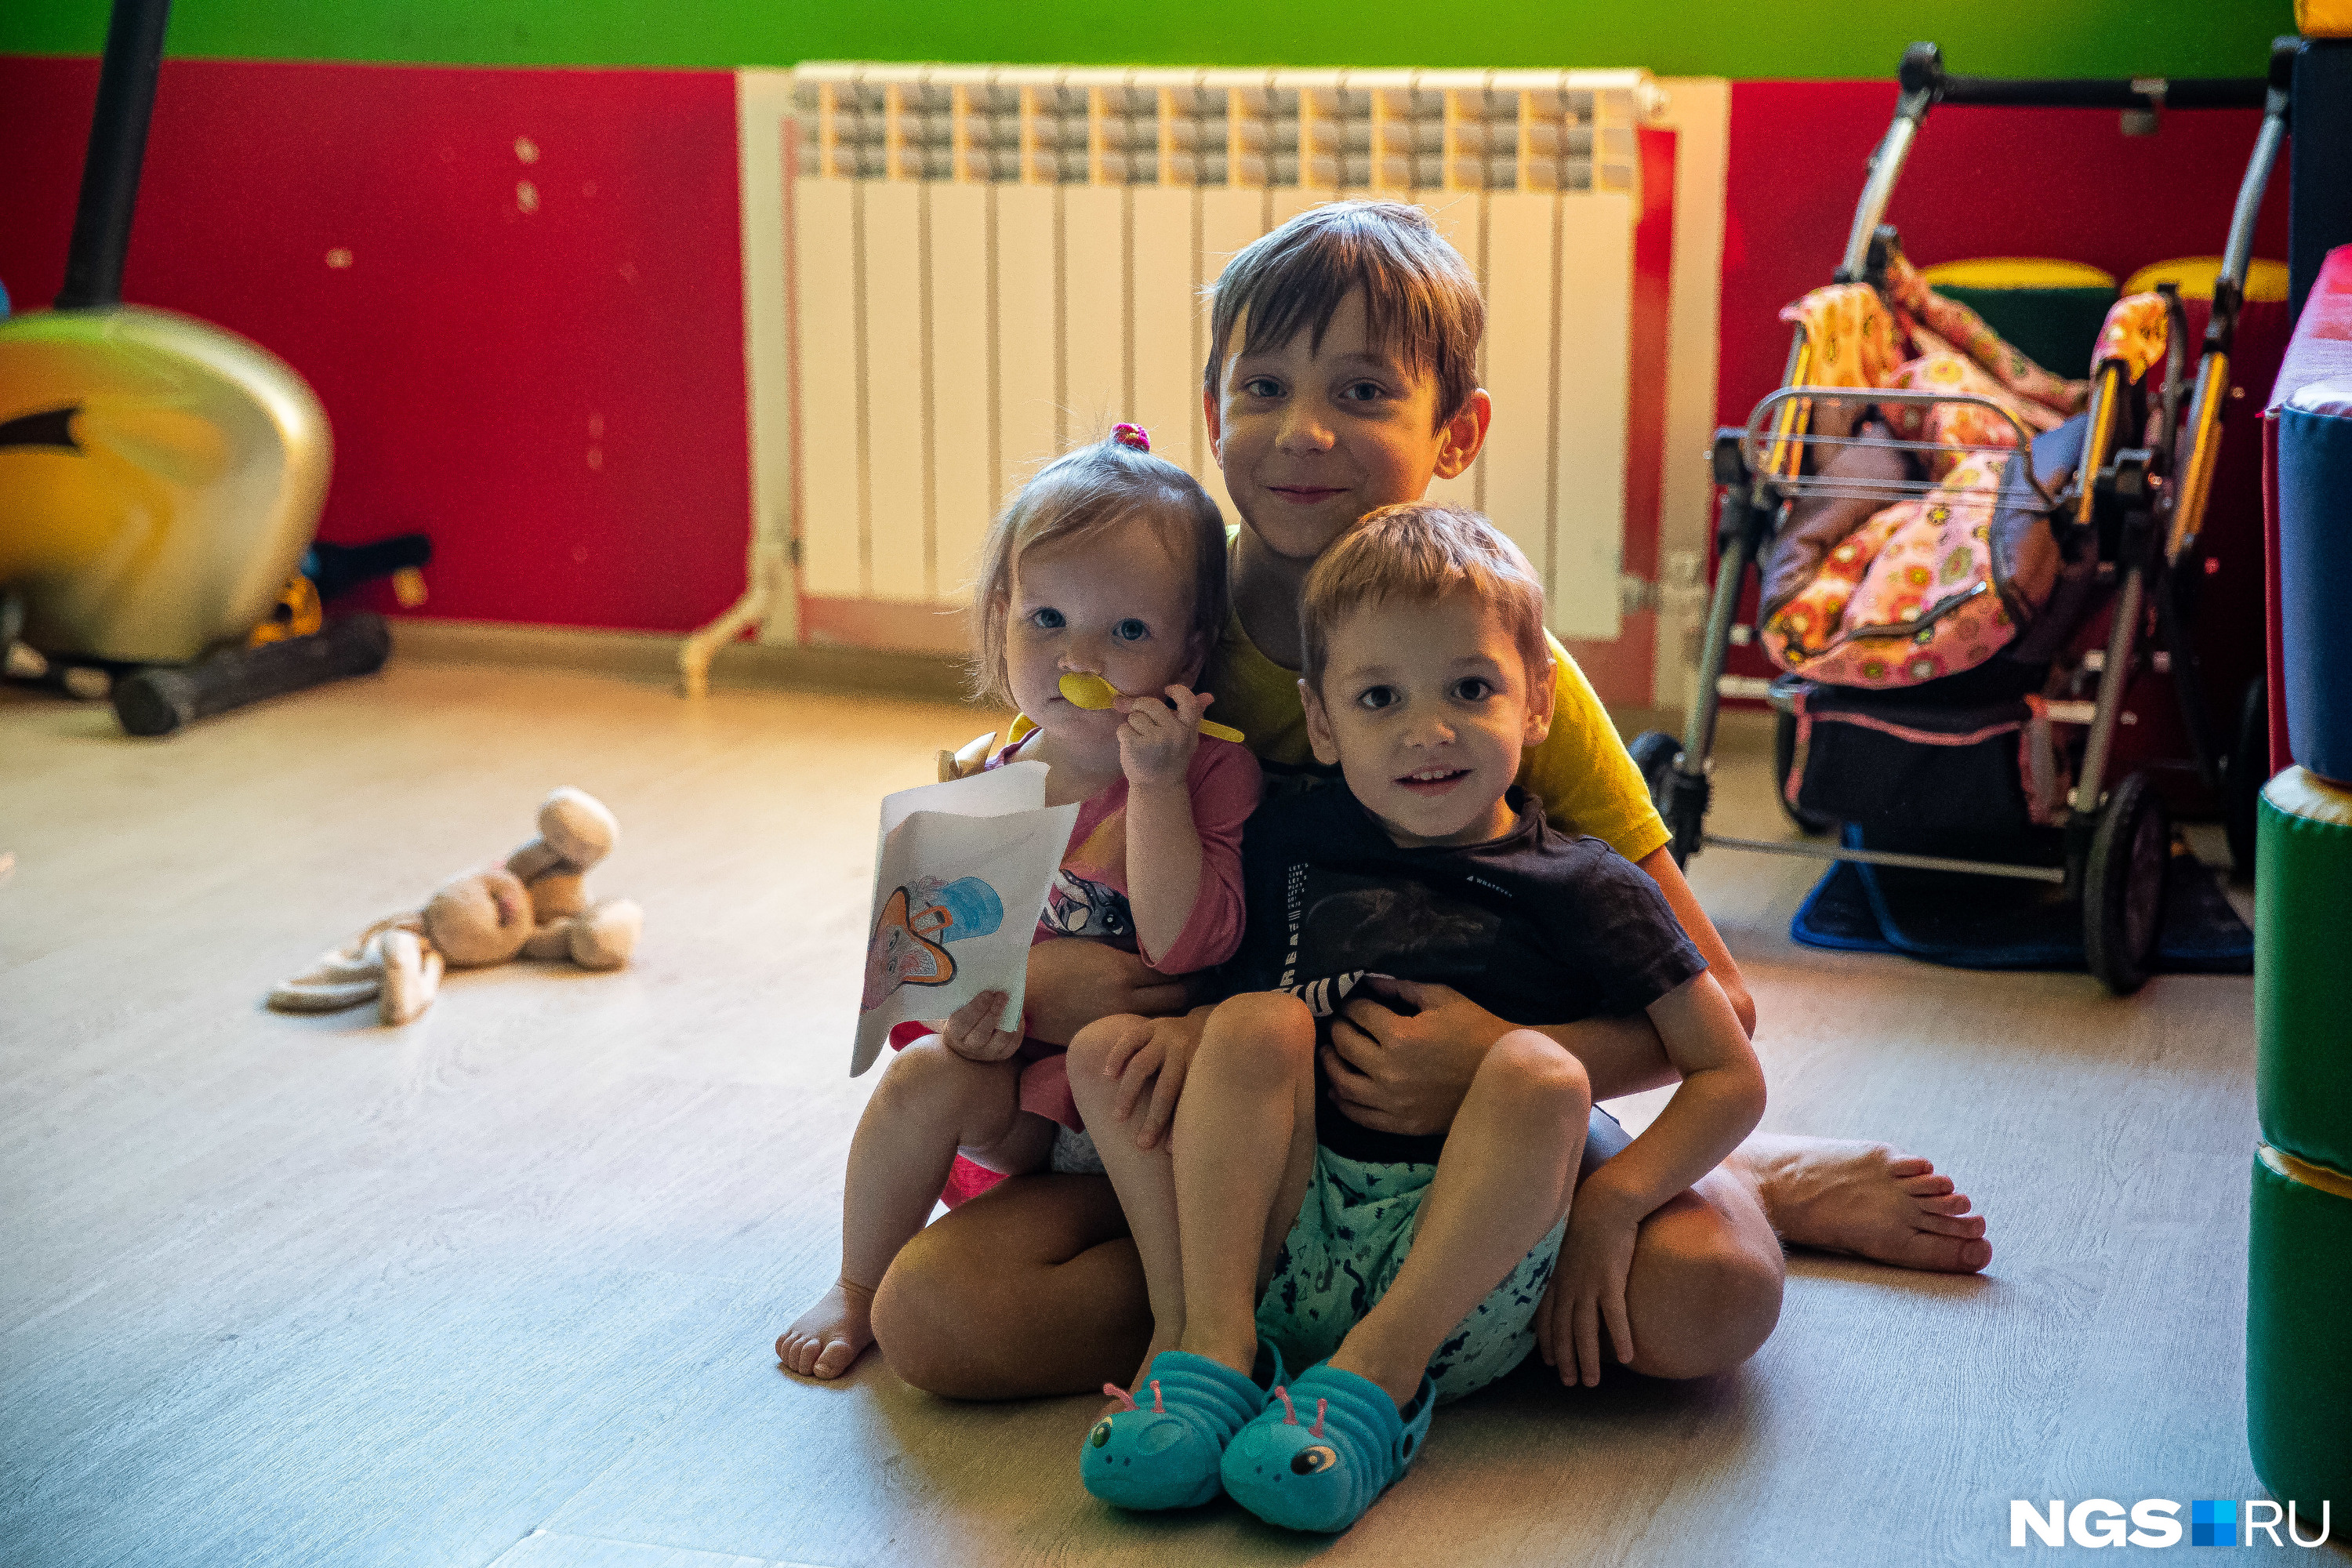 Дети приехали в Новосибирск всего неделю назад, до этого они жили в разных детских домах не только в ЛНР